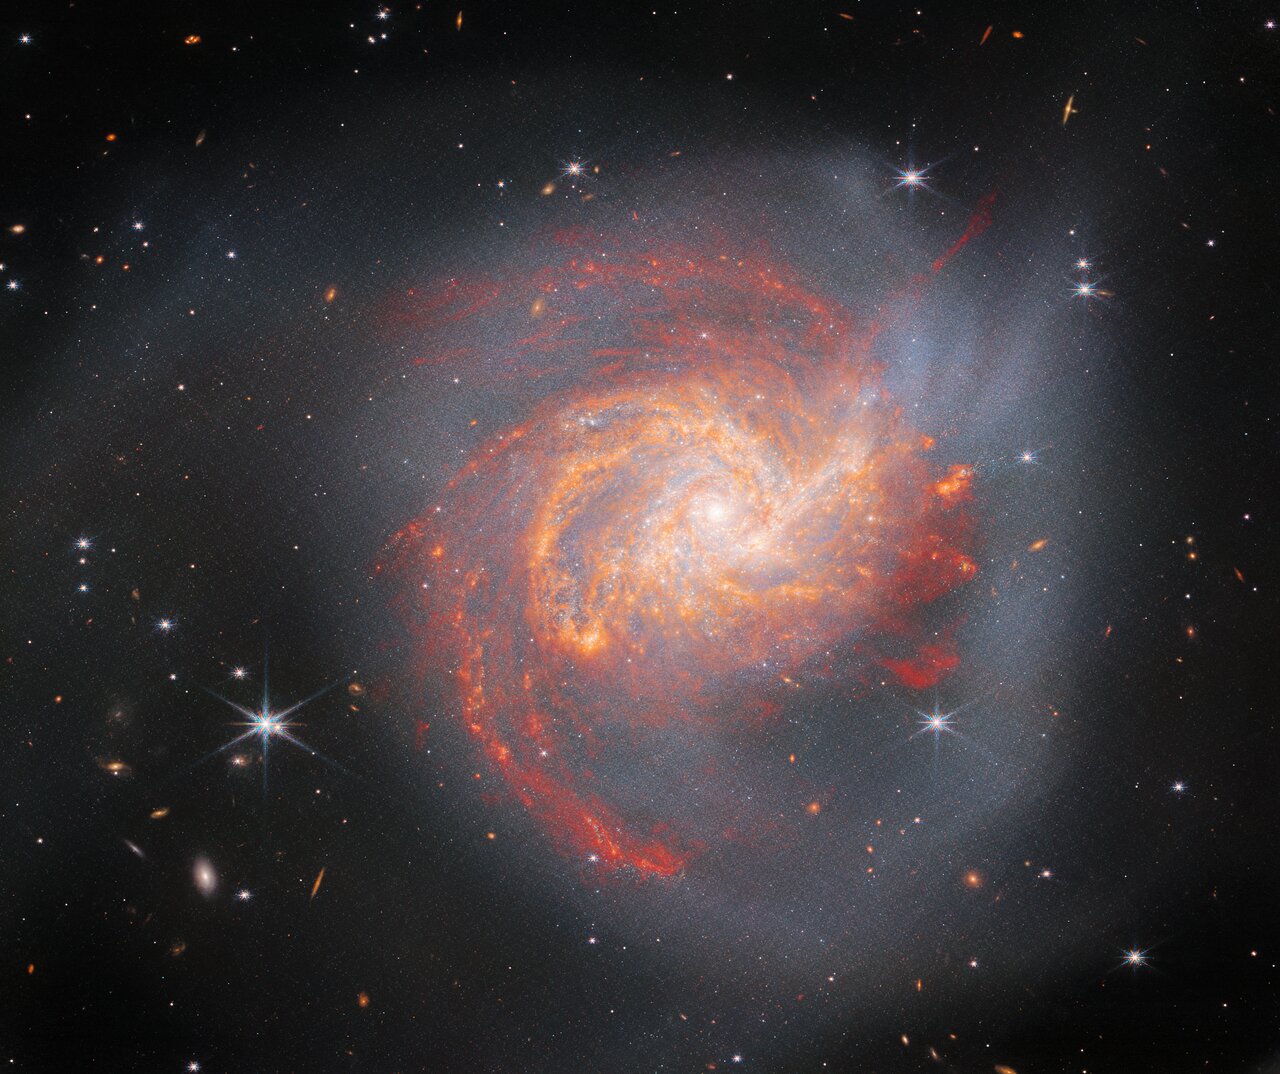 Neobična galaksija NGC 3256 dominira ovom slikom NASA/ESA/CSA svemirskog teleskopa James Webb. Ova galaksija veličine Mliječne staze nalazi se oko 120 milijuna svjetlosnih godina od nas u zviježđu Vela i stanovnik je superjata Hydra-Centaurus.